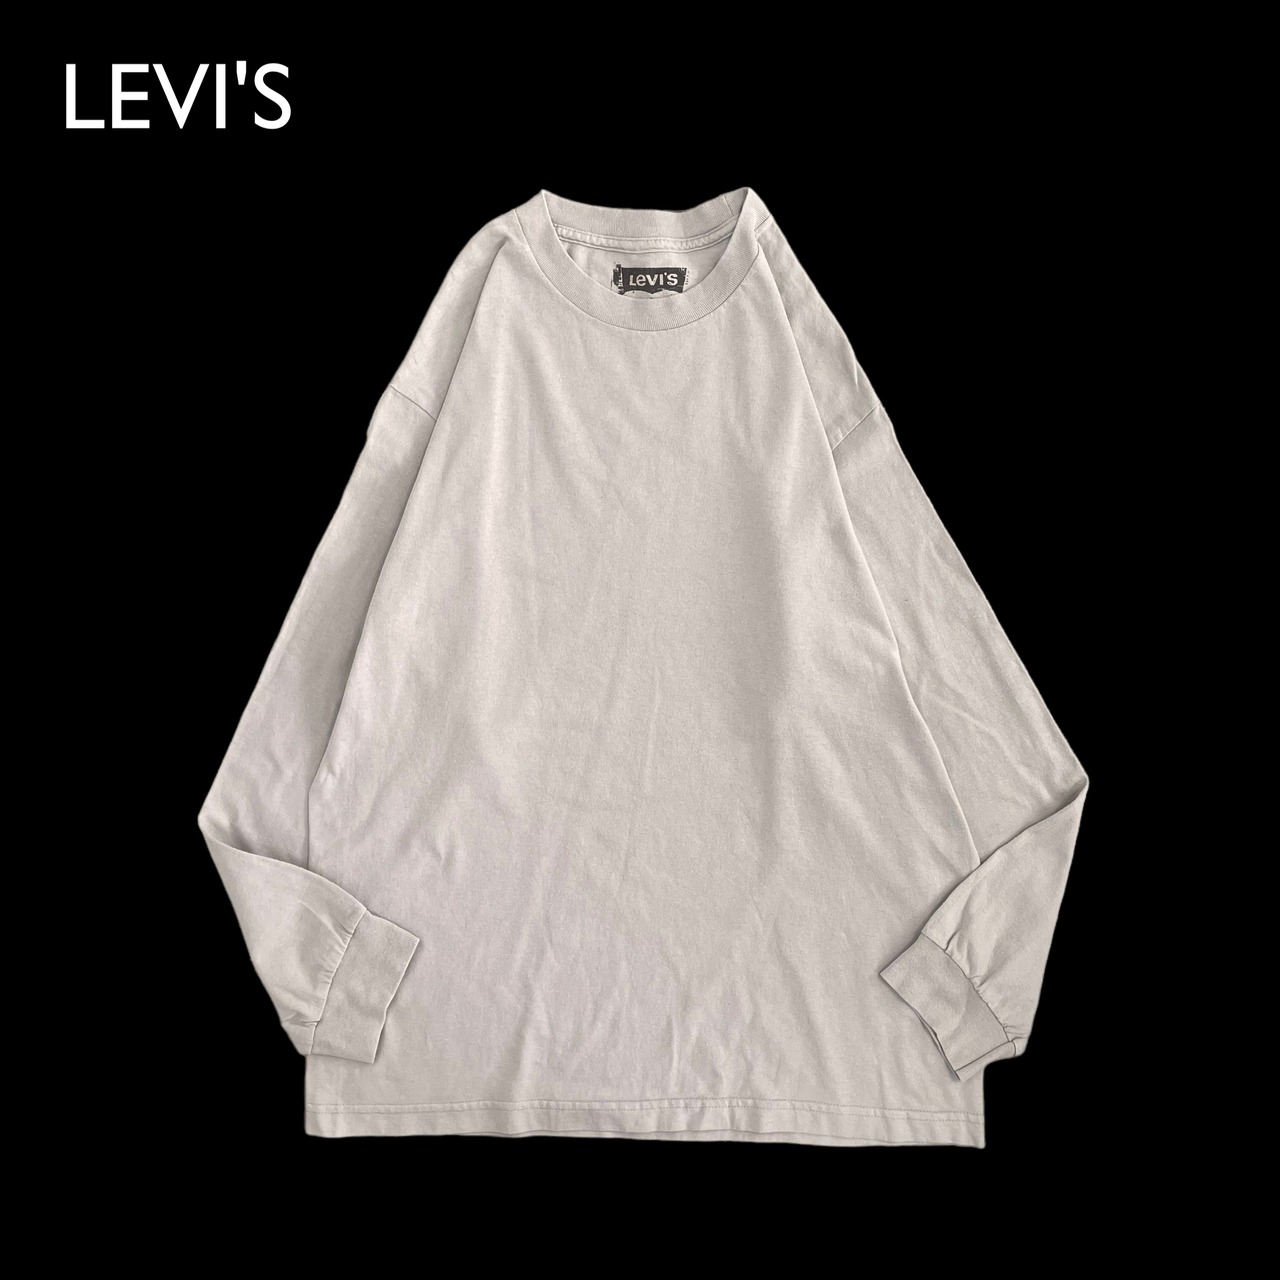 【LEVI'S】メキシコ製 ロンt 長袖Tシャツ ロングTシャツ ベージュ 無地 プレーン LARGE トップス インナー リーバイス US古着